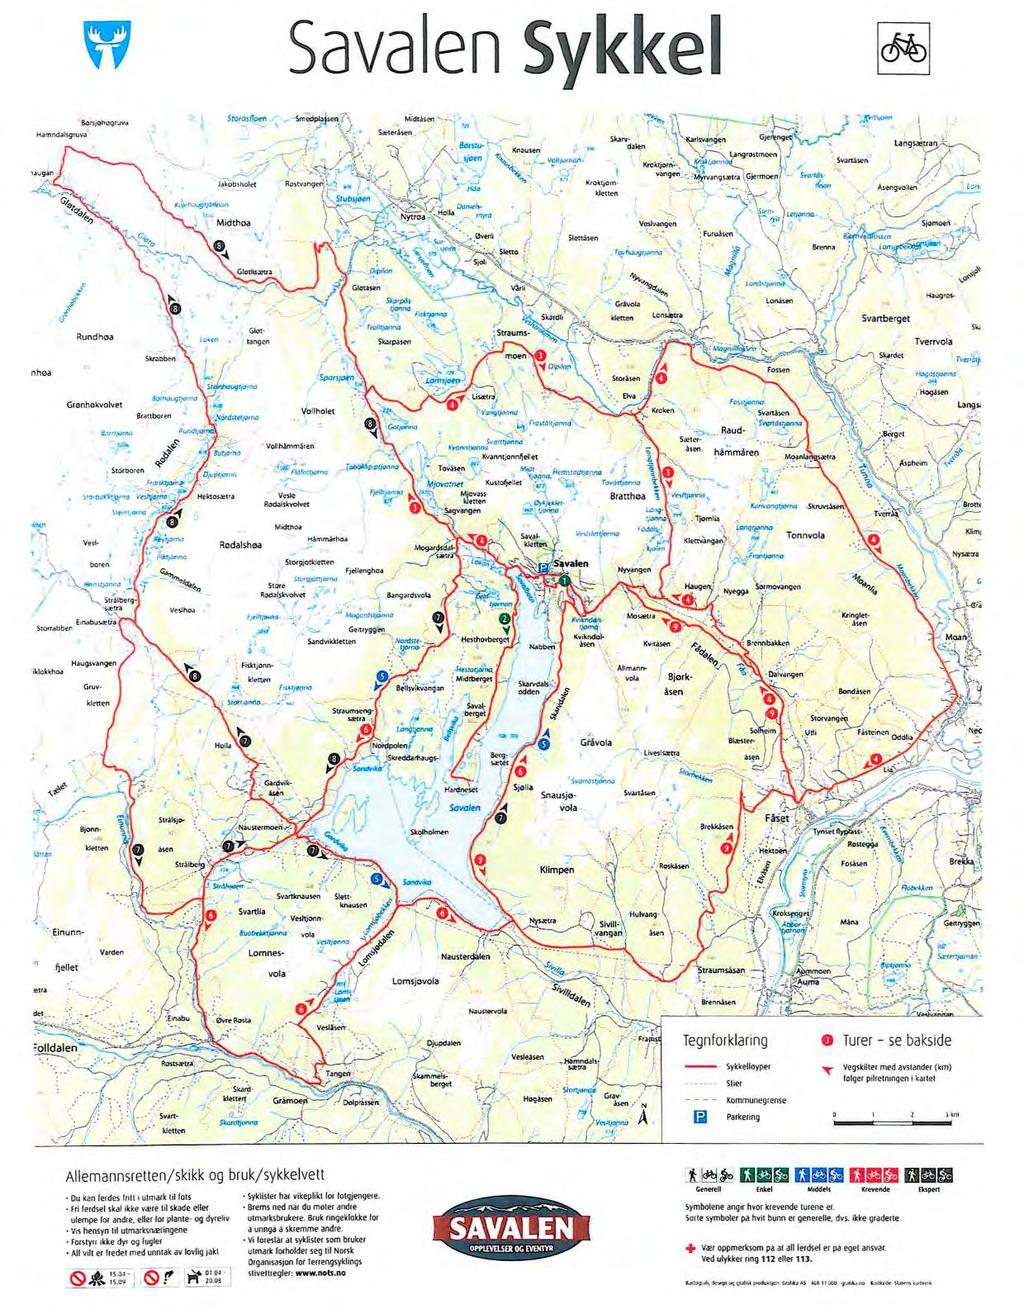 Sammen med søknaden er det lagt ved bl.a. et kart over sykkelruter i områdene rundt Savalen. Se neste side.